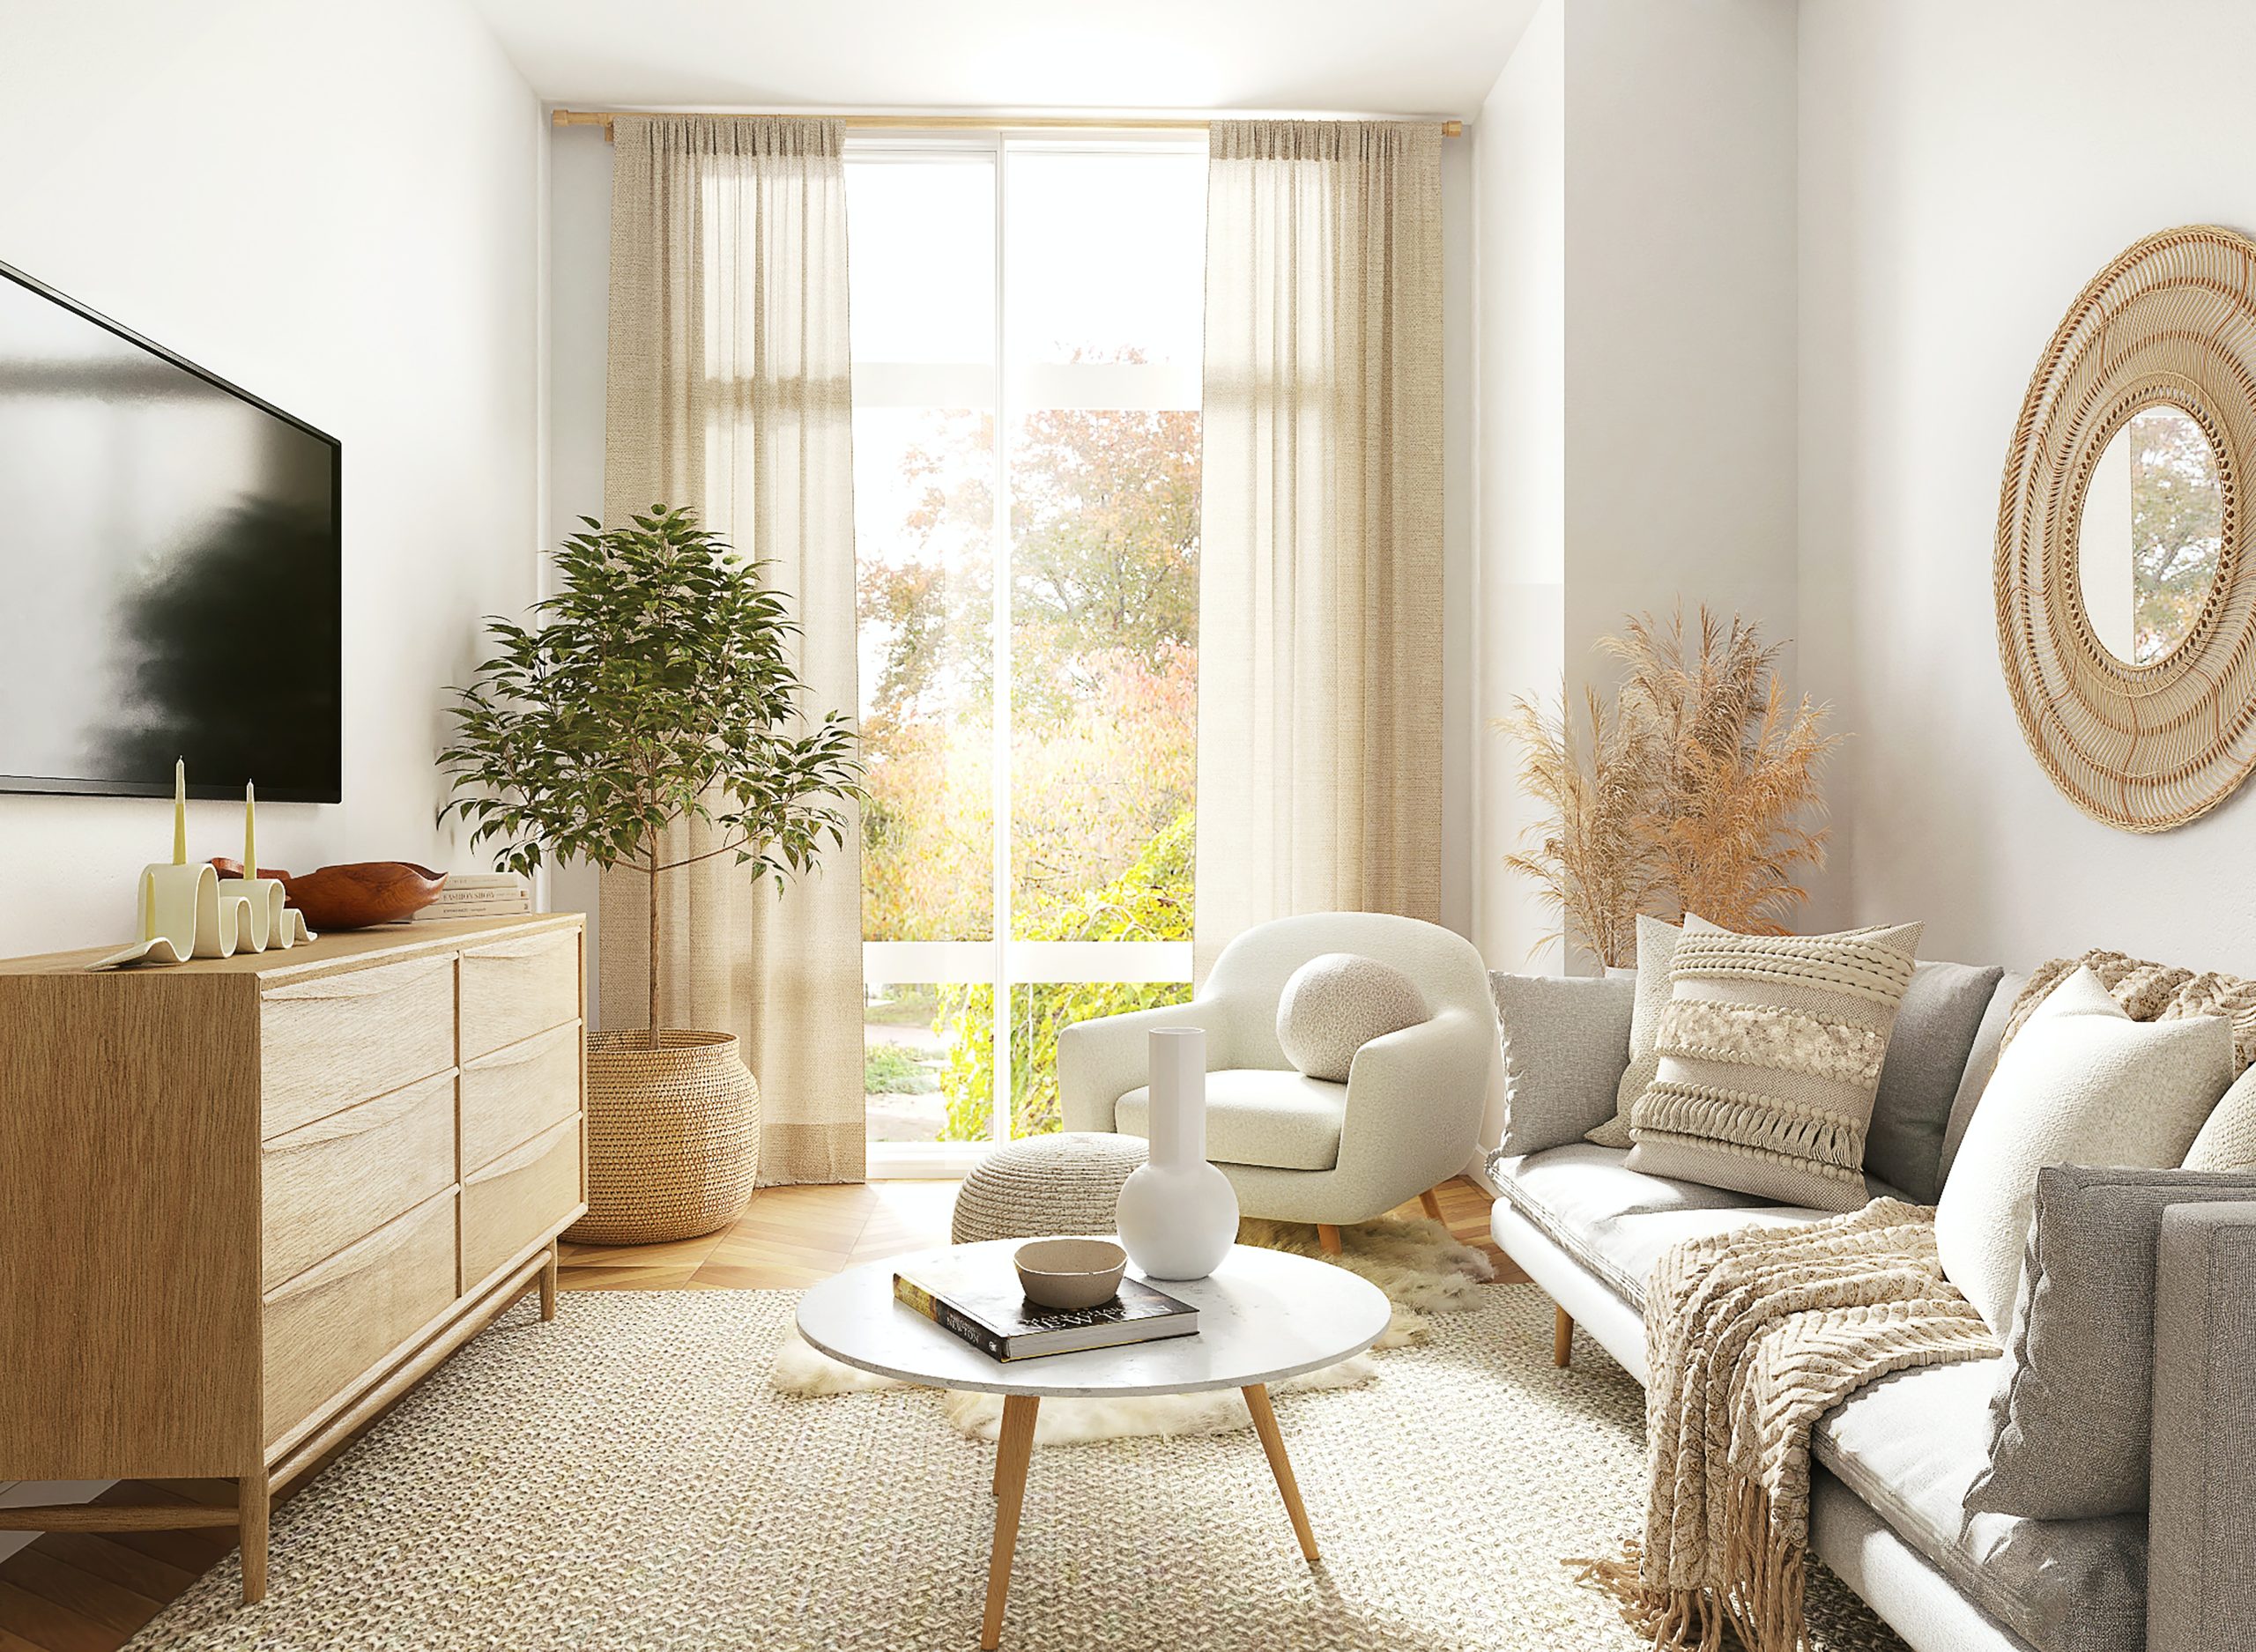 Sala pequeña con decoración minimalista, sofá gris y silla blanca junto a la ventana